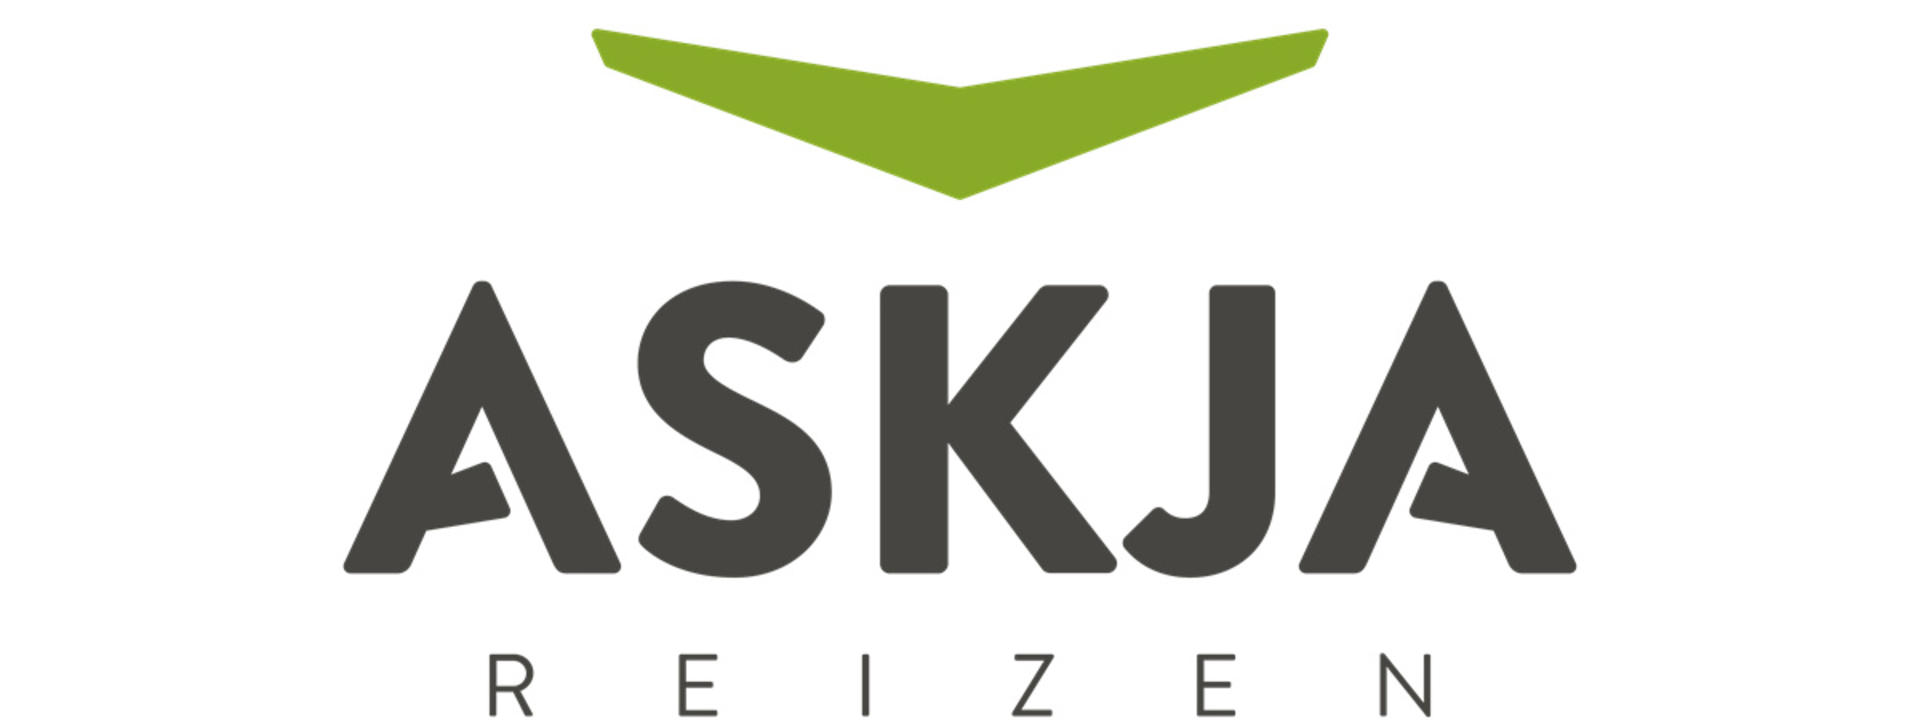 Logo: Askja Reizen